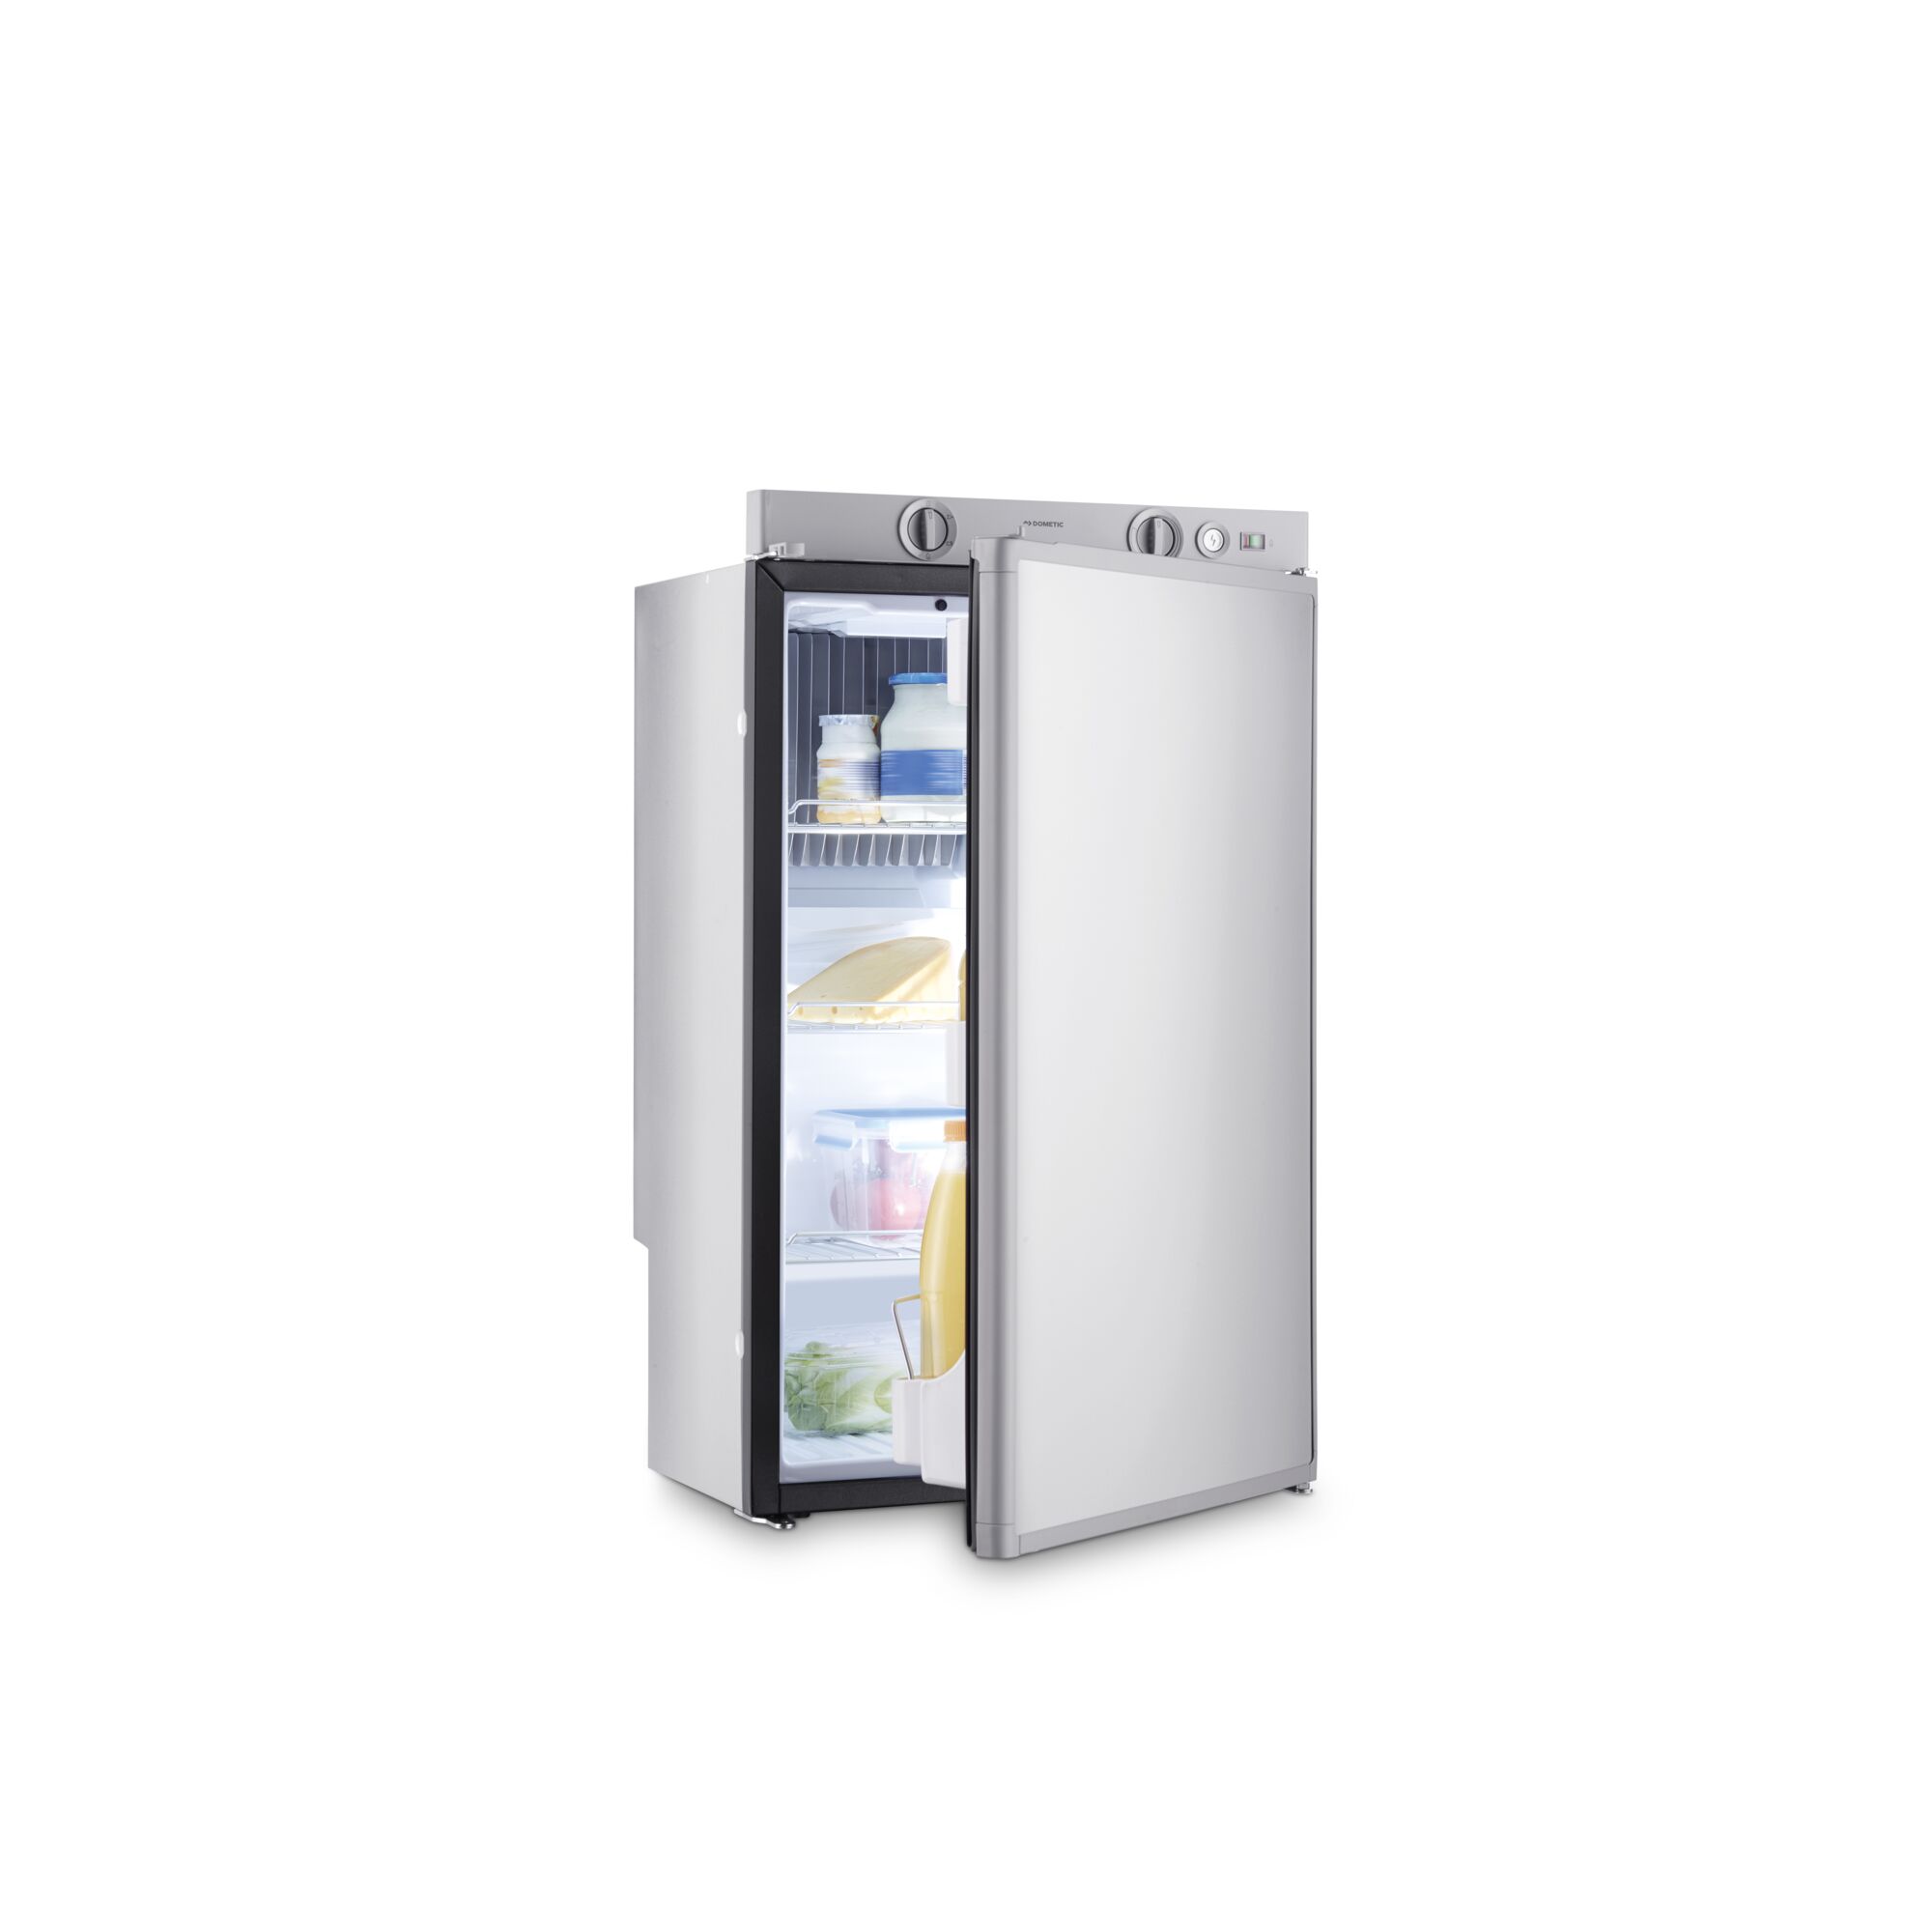 Dometic RM 5330 - Absorptionskøleskab, 70 l, venstrehængslet, batteritænding